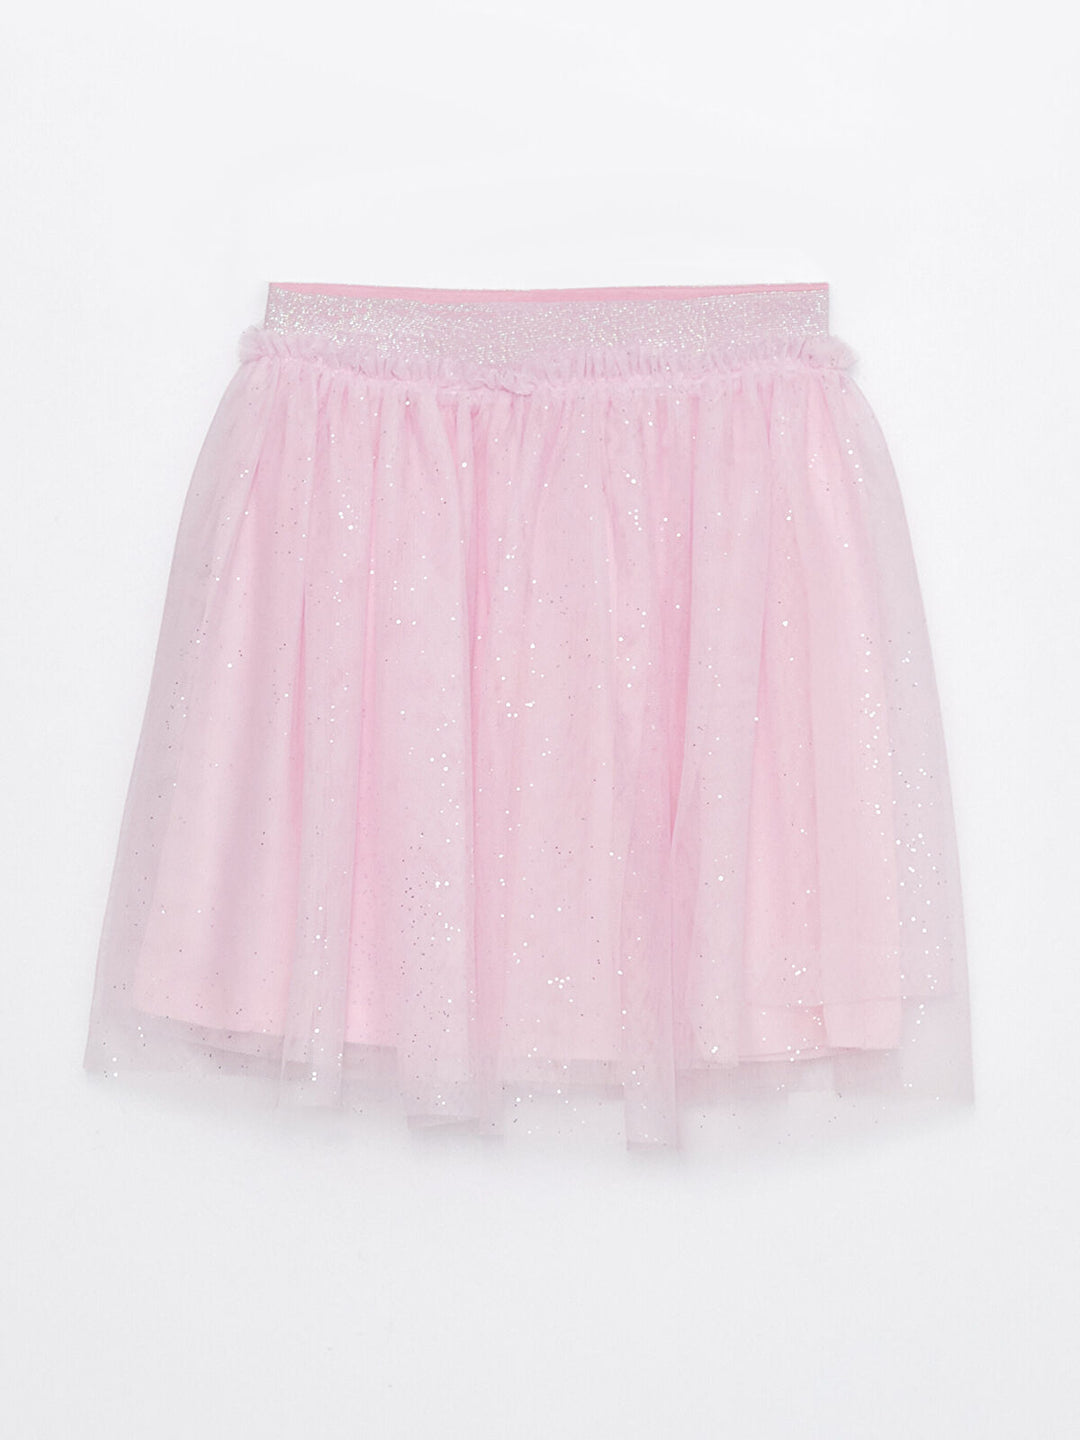 Kids Elastic Waist Girl Tulle Skirt